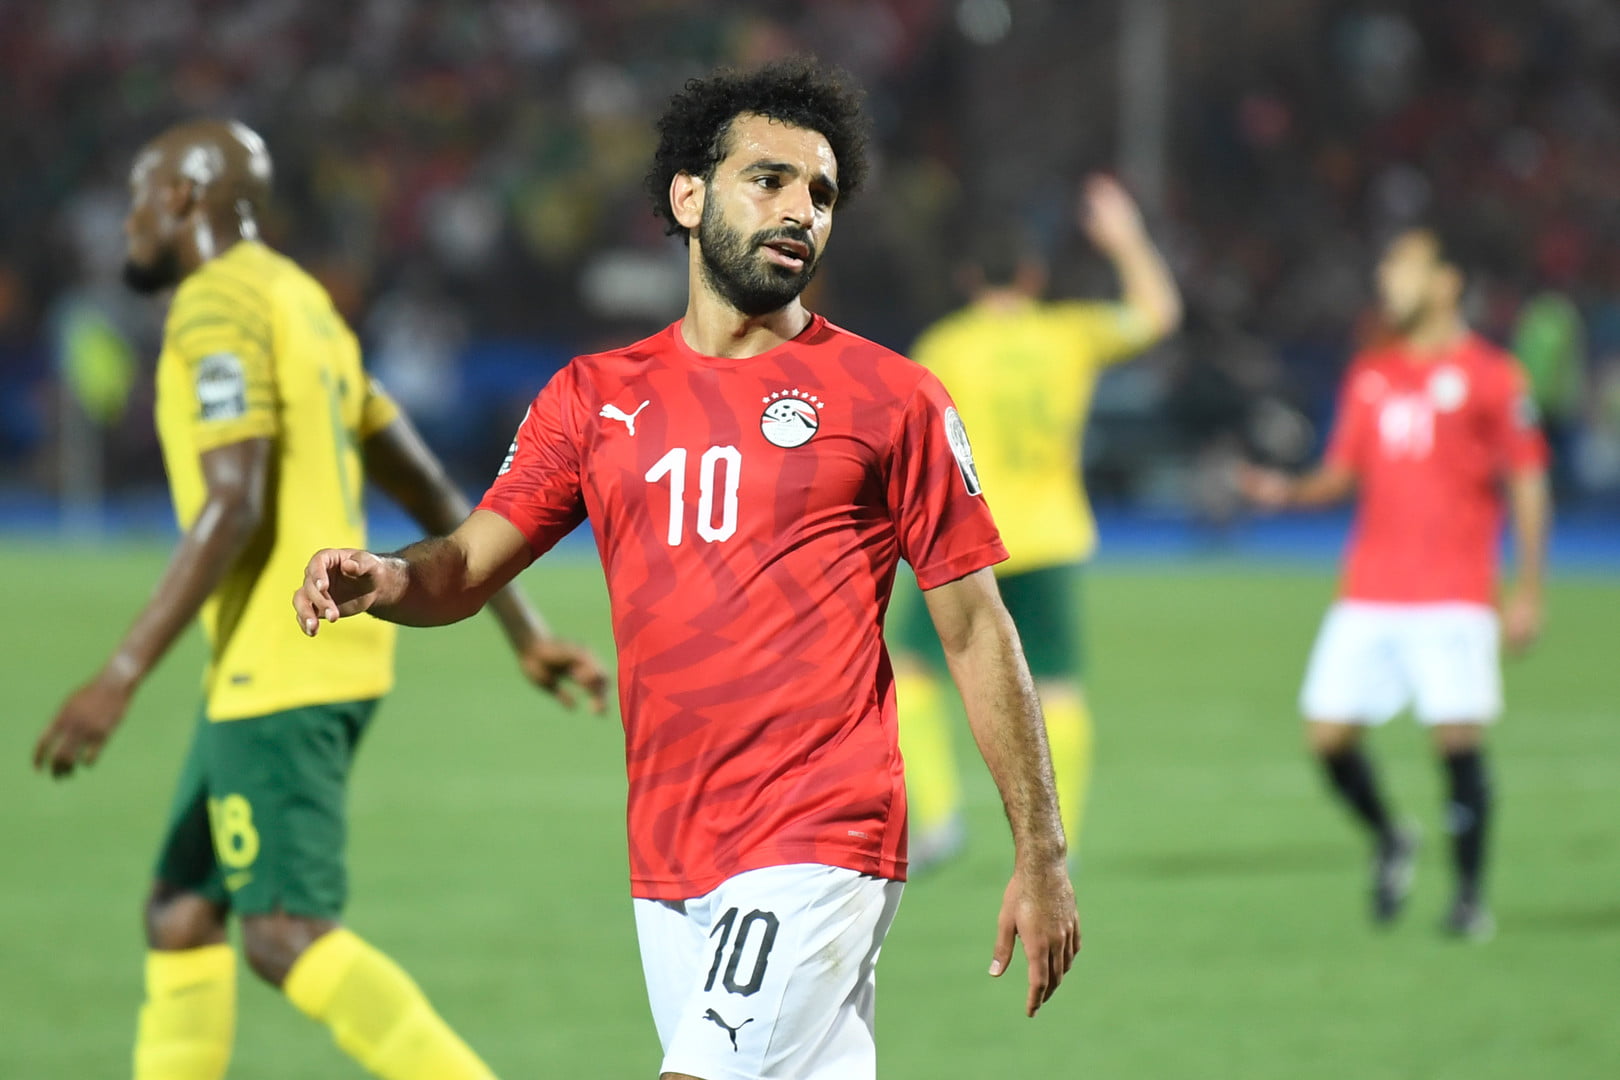 لأول مرة يتم الكشف عن إصابة محمد صلاح بمرض خطير قبل مباراة مصر وجنوب افريقيا بالفيديو